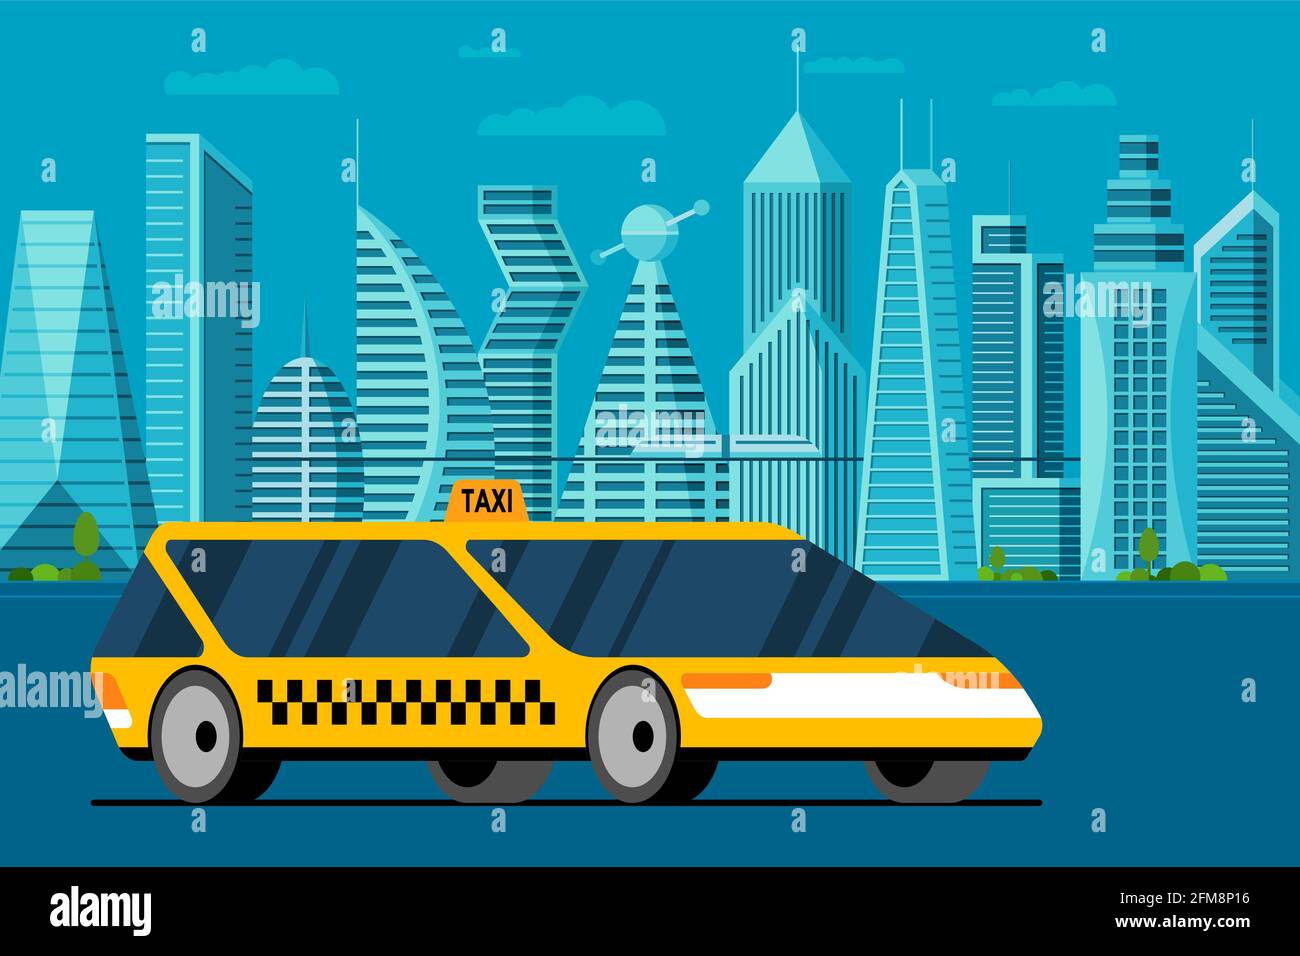 Futuristisches gelbes Auto auf zukünftiger Stadtlandschaft Straße. Autonom Taxi Taxi Taxi Fahrzeug-Service in Smart City mit Wolkenkratzern und Türmen. Flache Vektorgrafik Stock Vektor